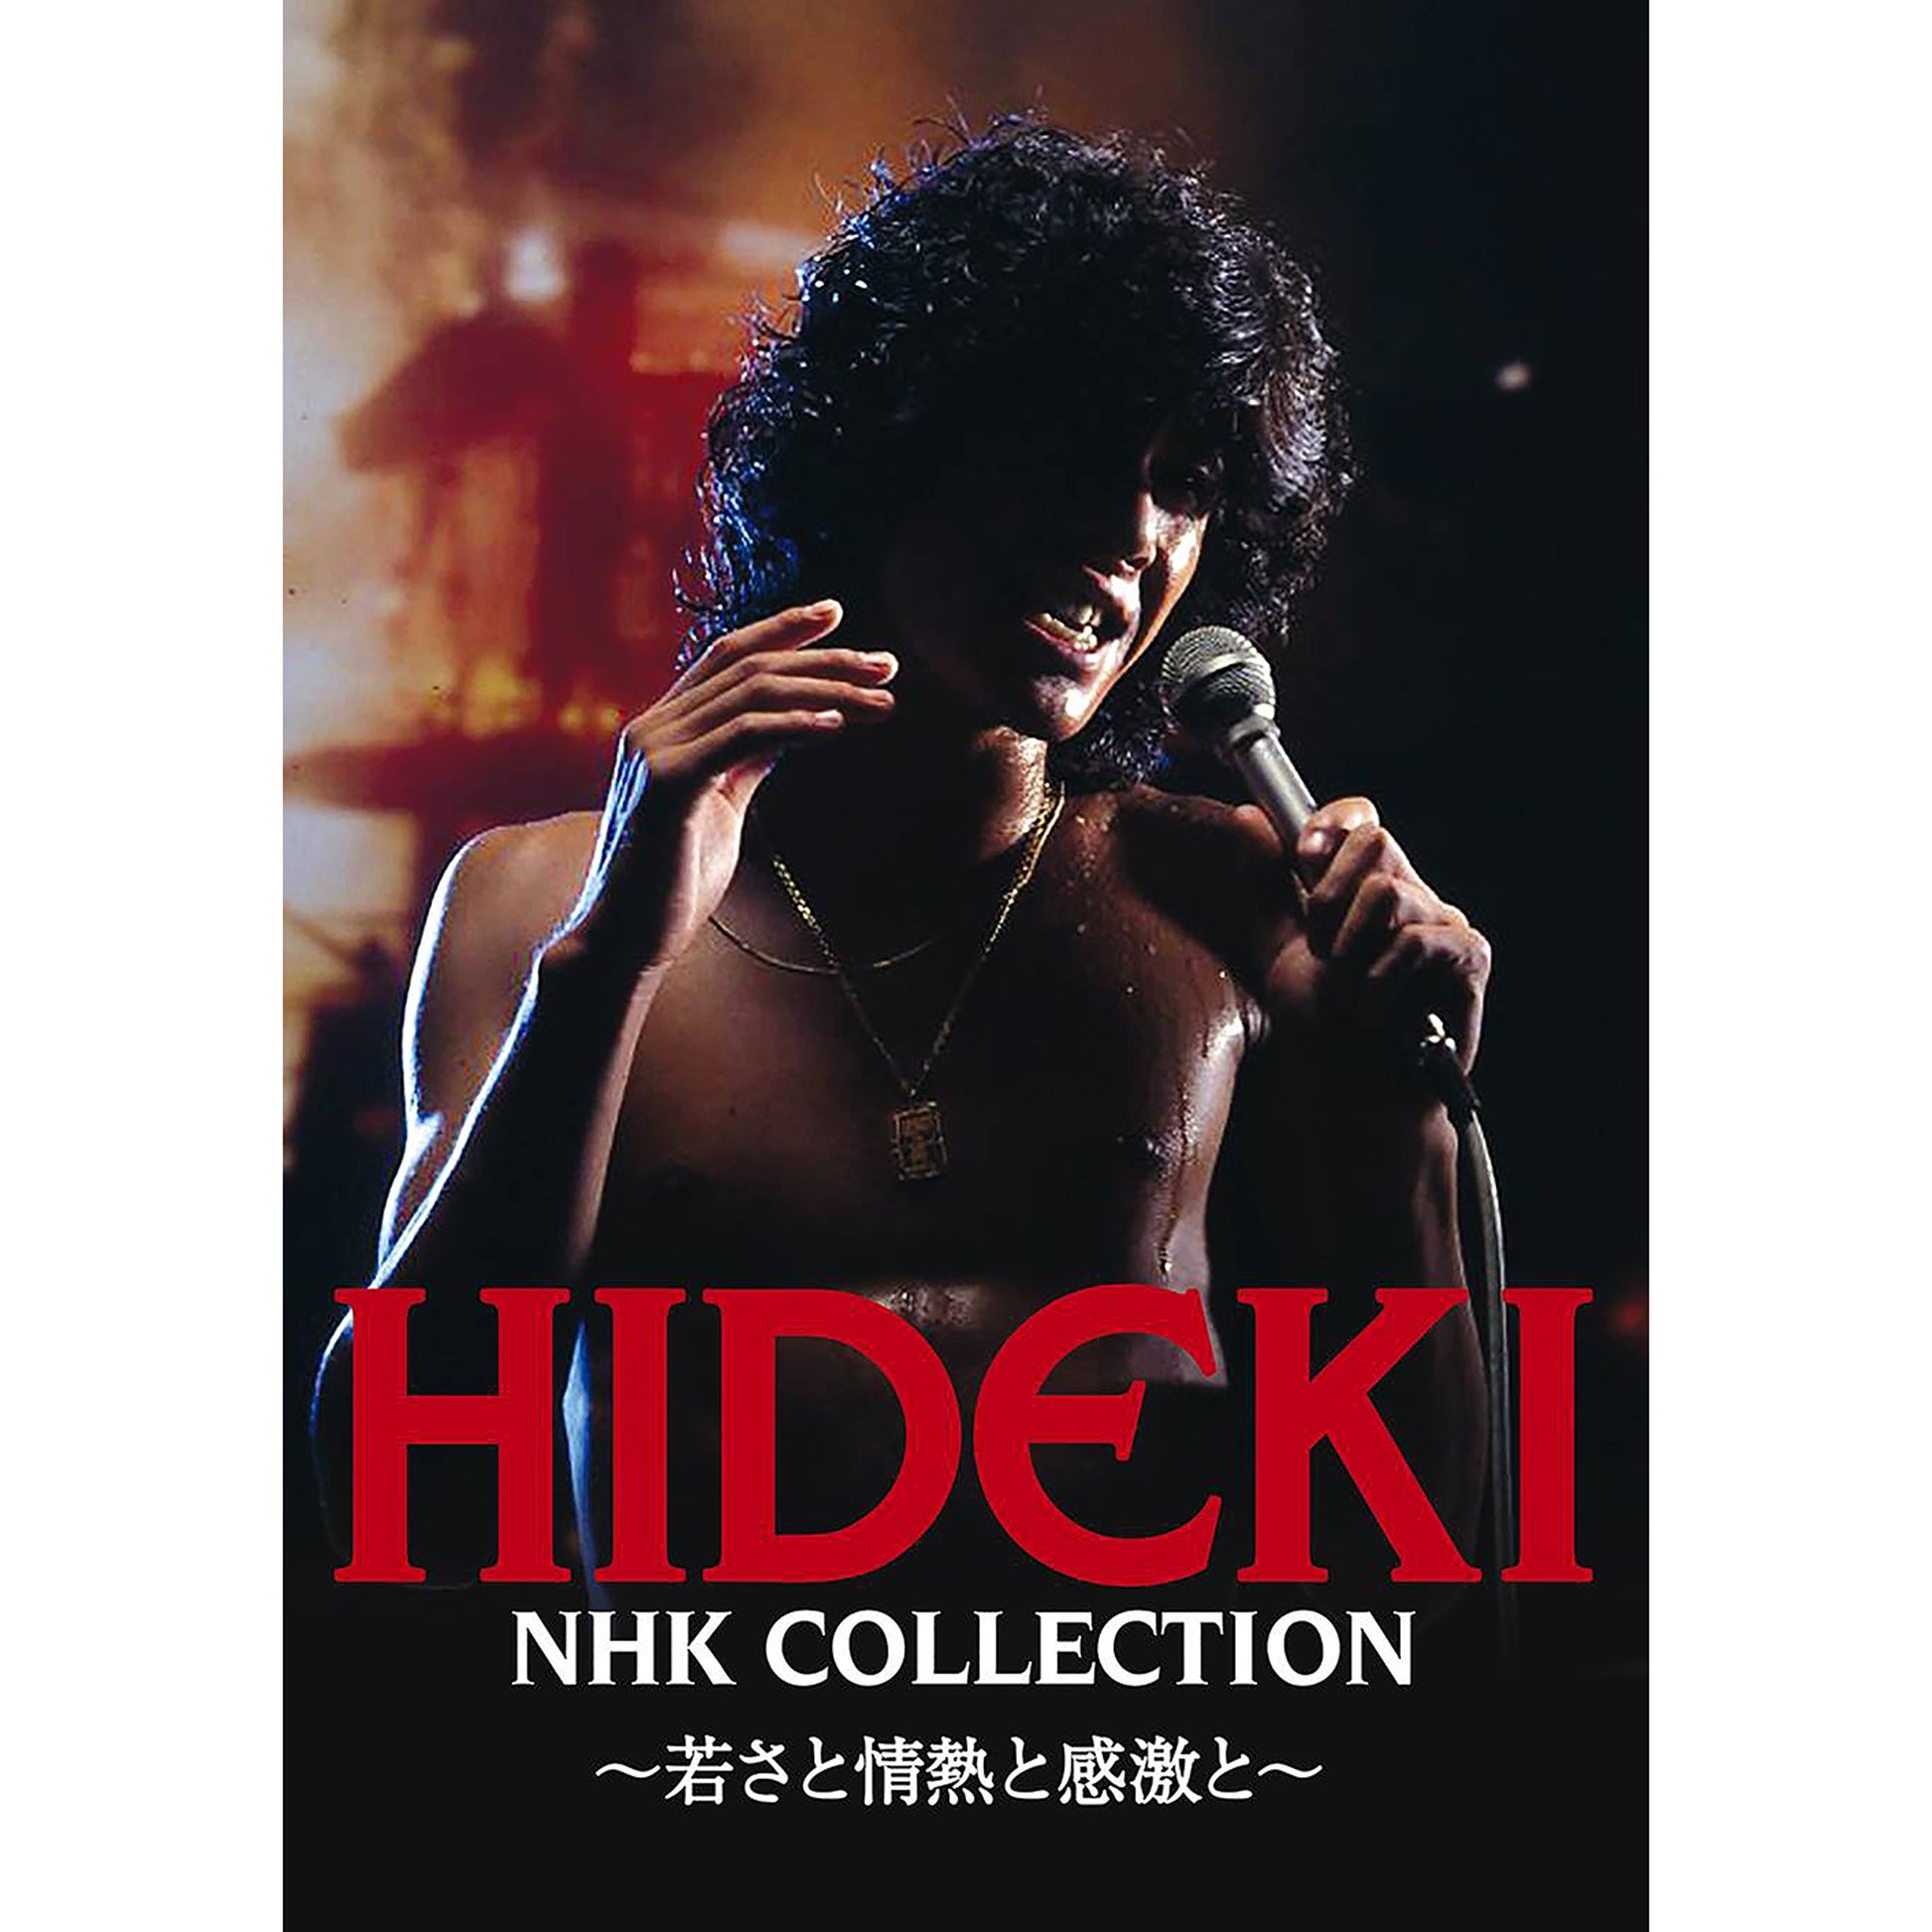 西城秀樹～若さと情熱と感激と～ DVD BOX HIDEKI NHK Collection - NHK